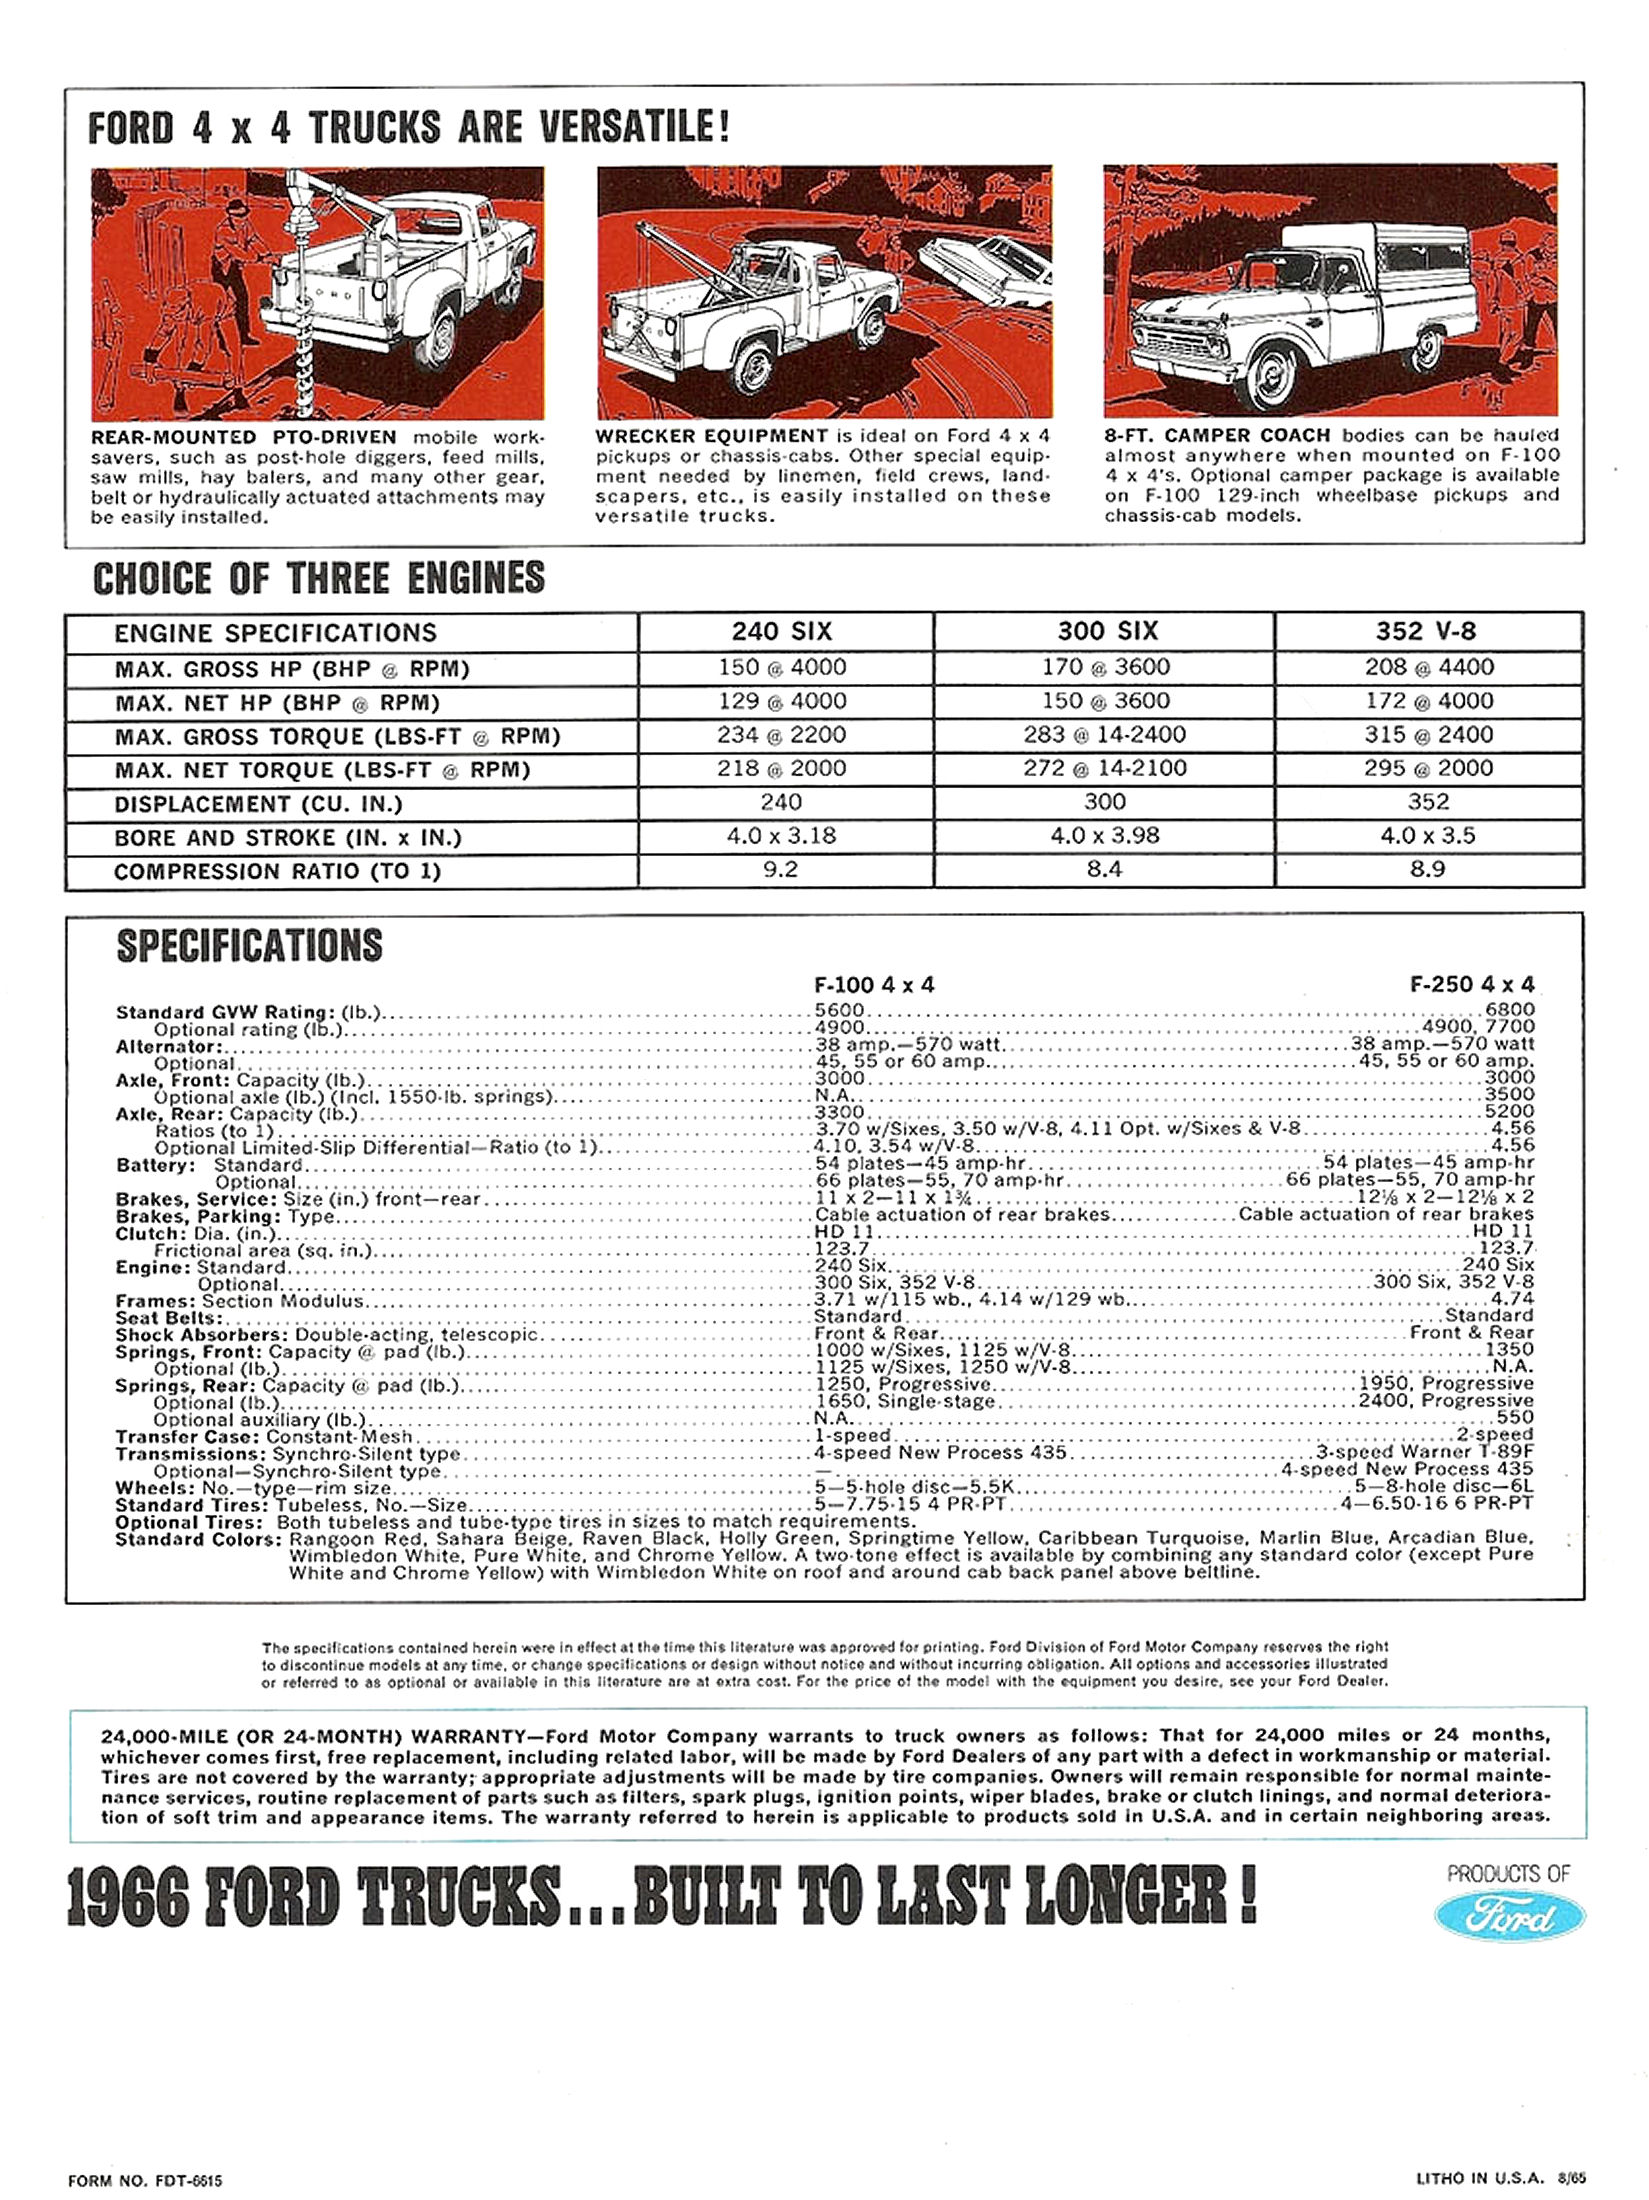 1966 Ford F-100 & F-250 4WD Trucks-04